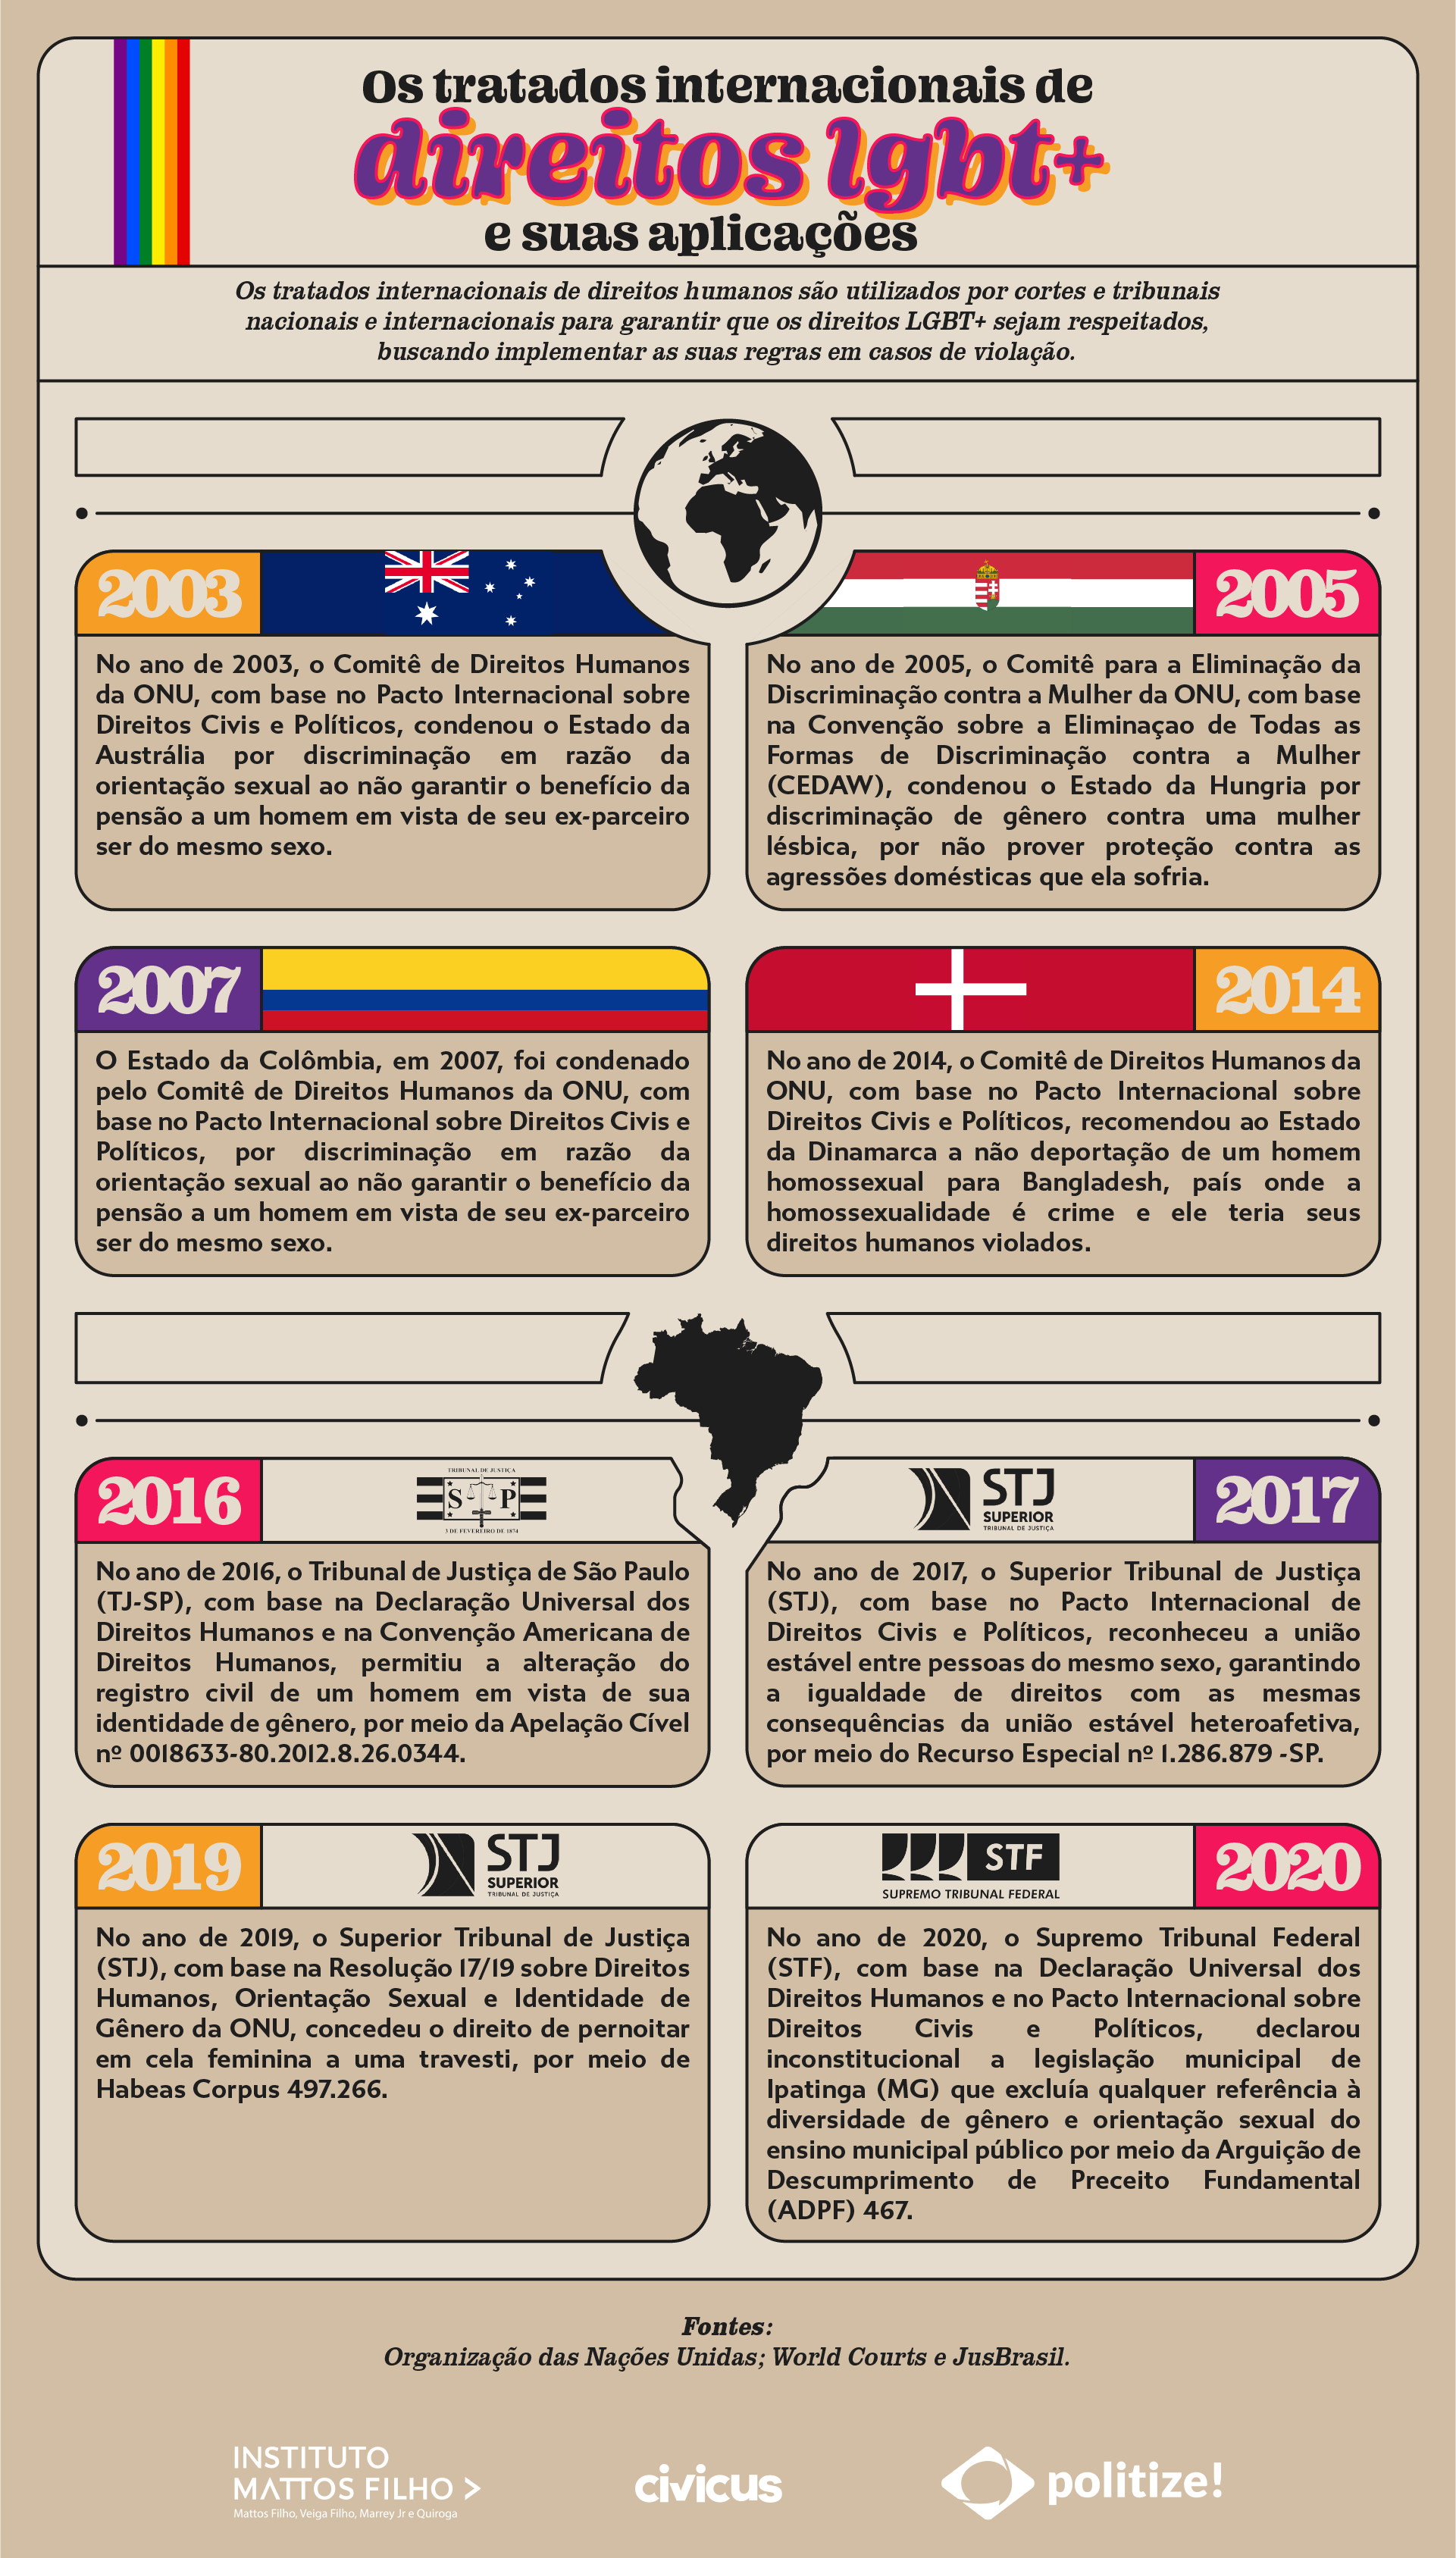 Infográfico sobre casos em que os tratados internacionais de direitos humanos foram aplicados para defender os direitos LGBT+, mostrando a jurisprudência no mundo e no Brasil